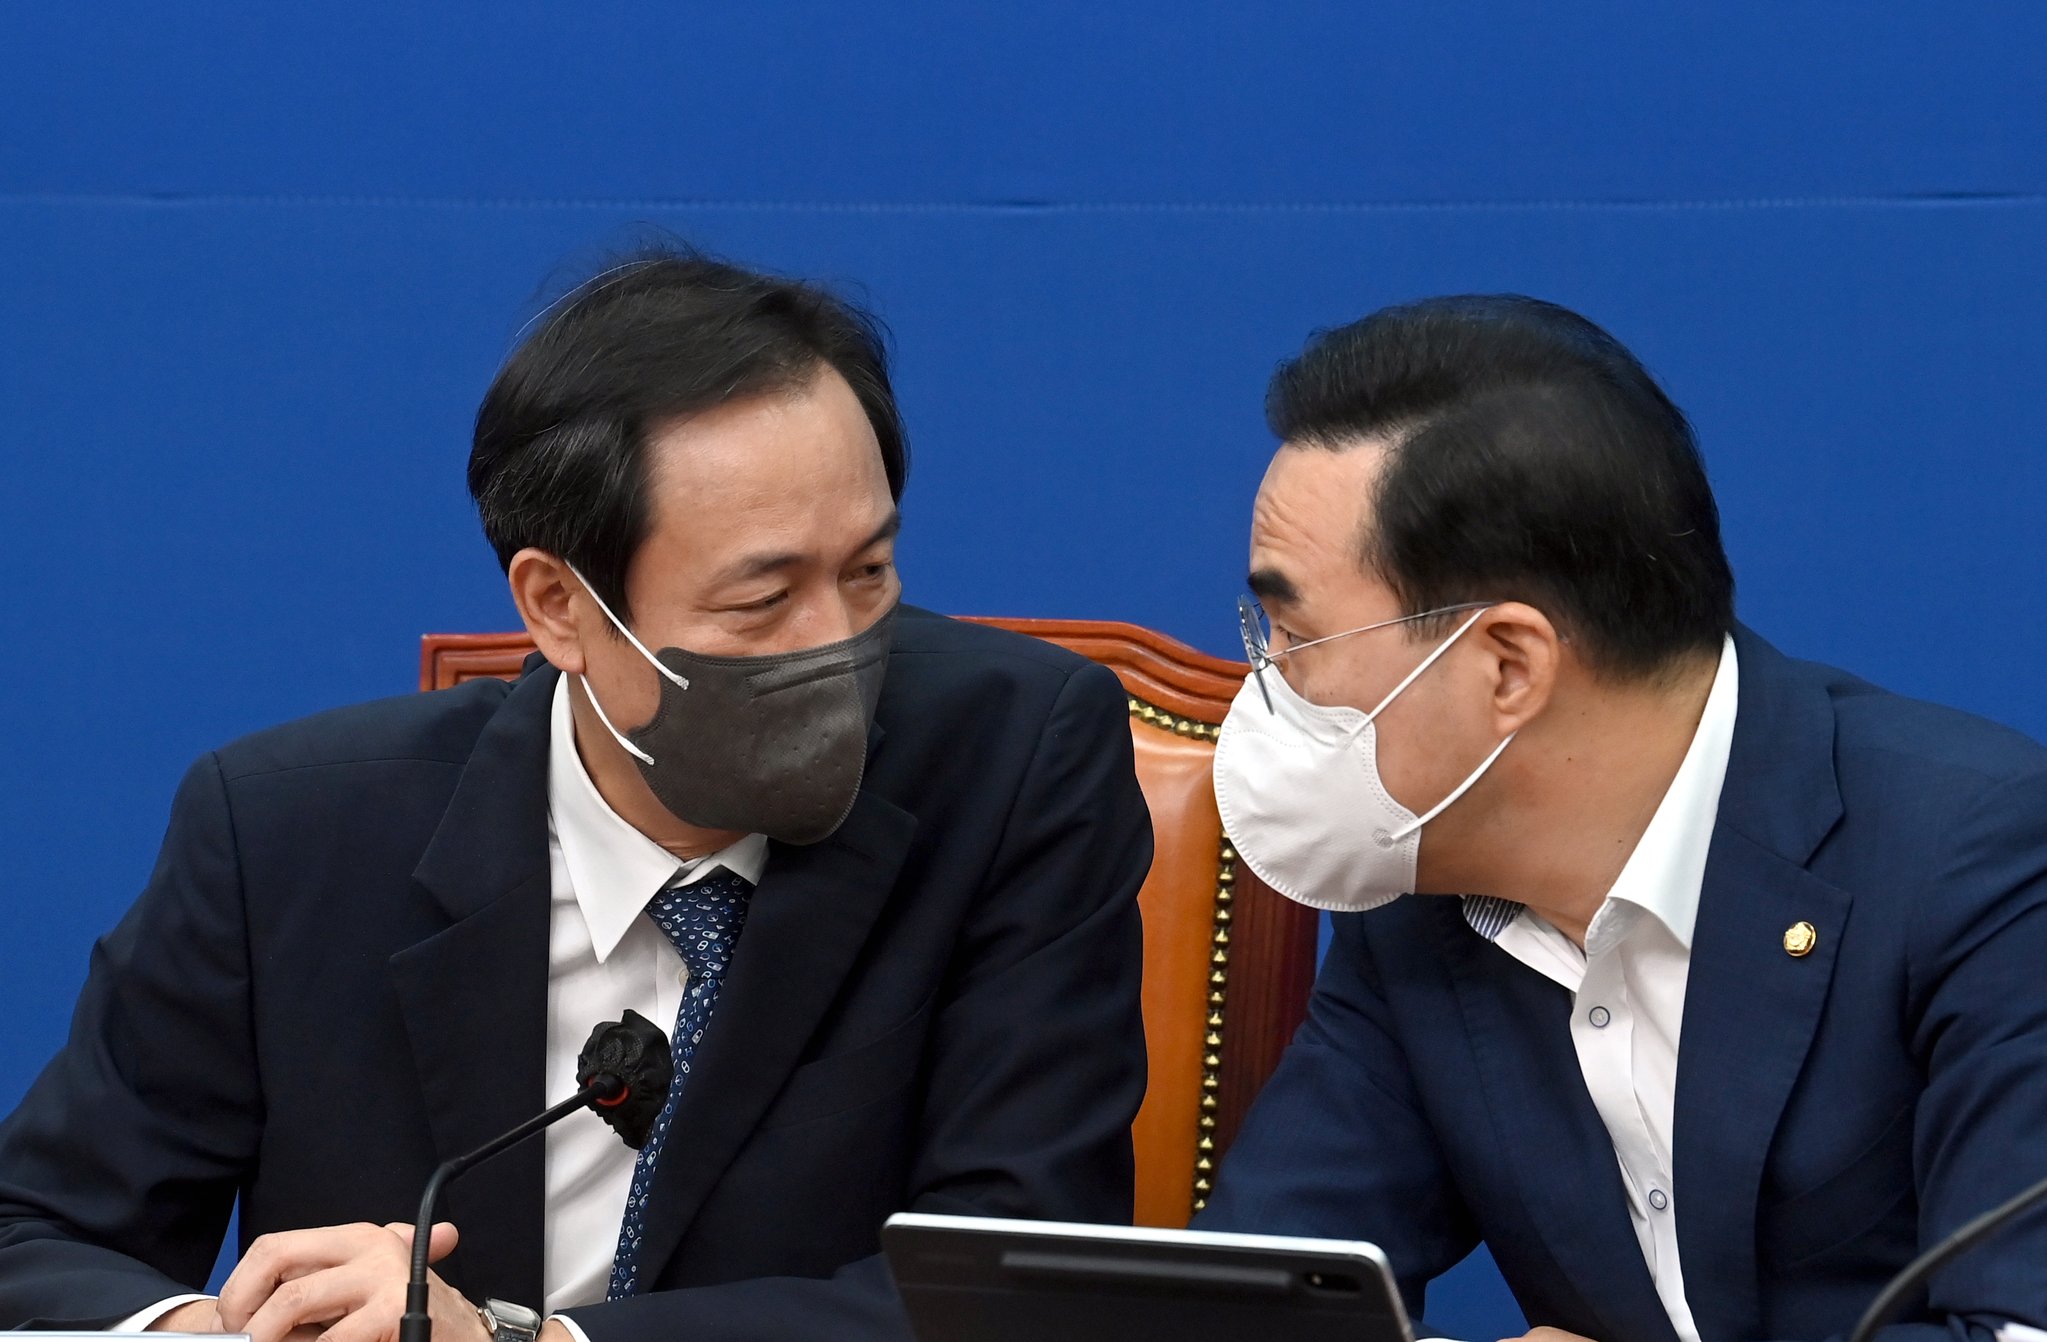 더불어민주당 우상호 비상대책위원장(왼쪽)과 박홍근 원내대표가 22일 국회에서 열린 비상대책위원회의에서 대화하고 있다. 김성룡 기자